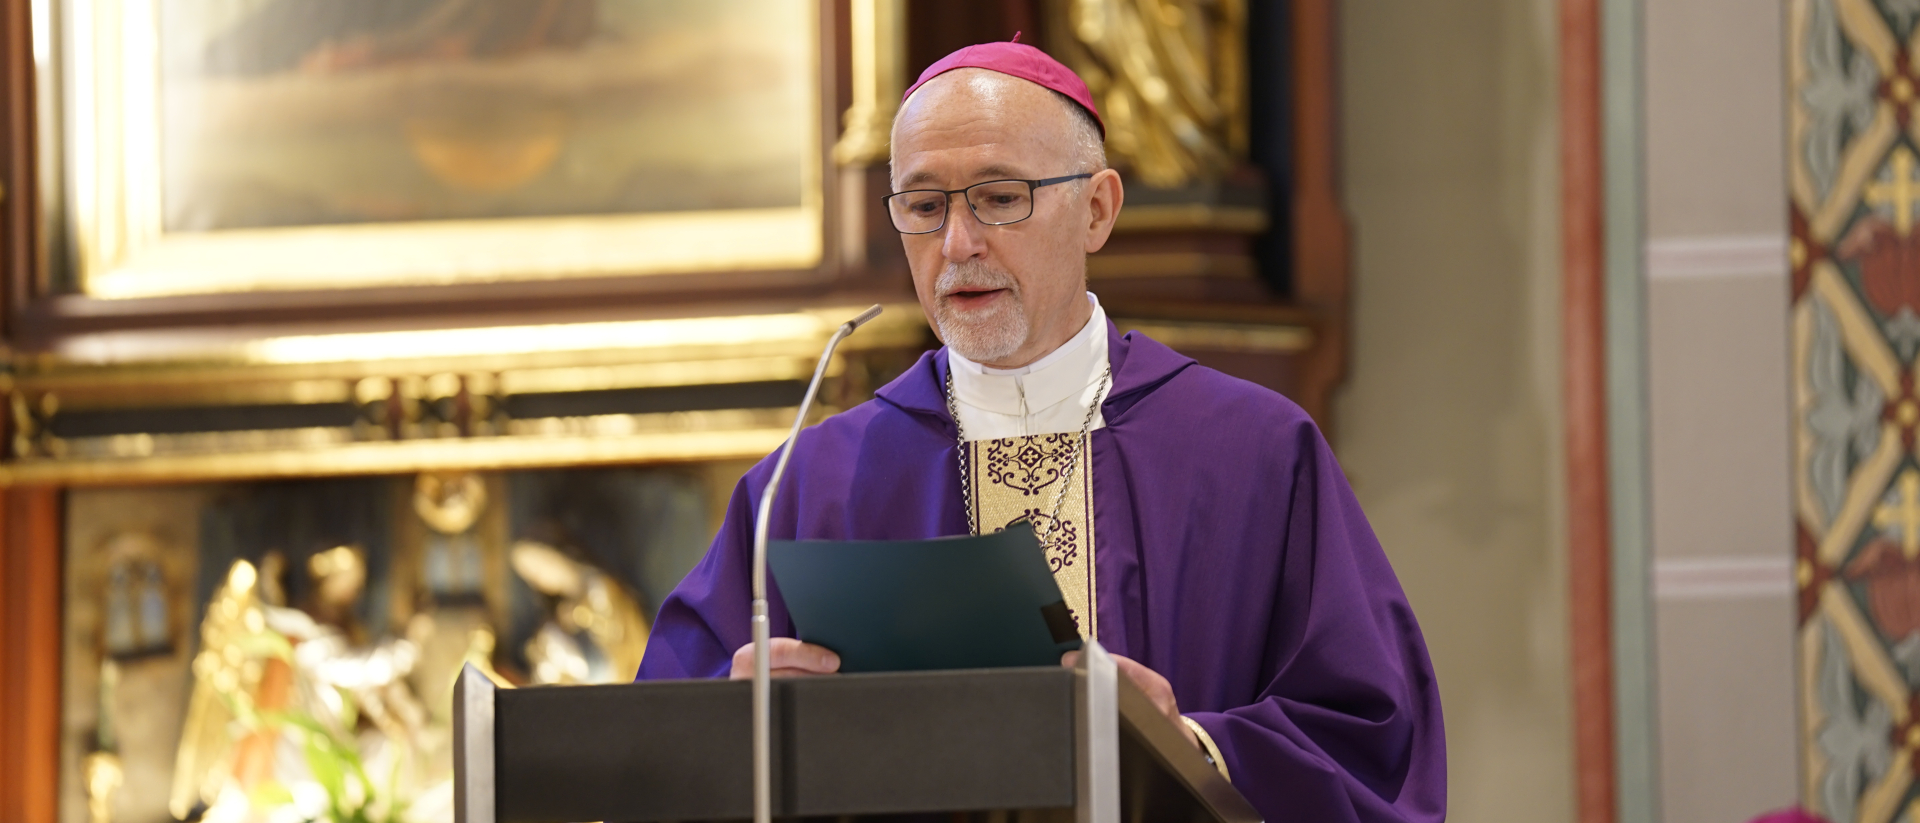 Nuntius Martin Krebs liest die Beileidsadresse von Kardinal Pietro Parolin - am Trauergottesdienst für den Peter Henrici